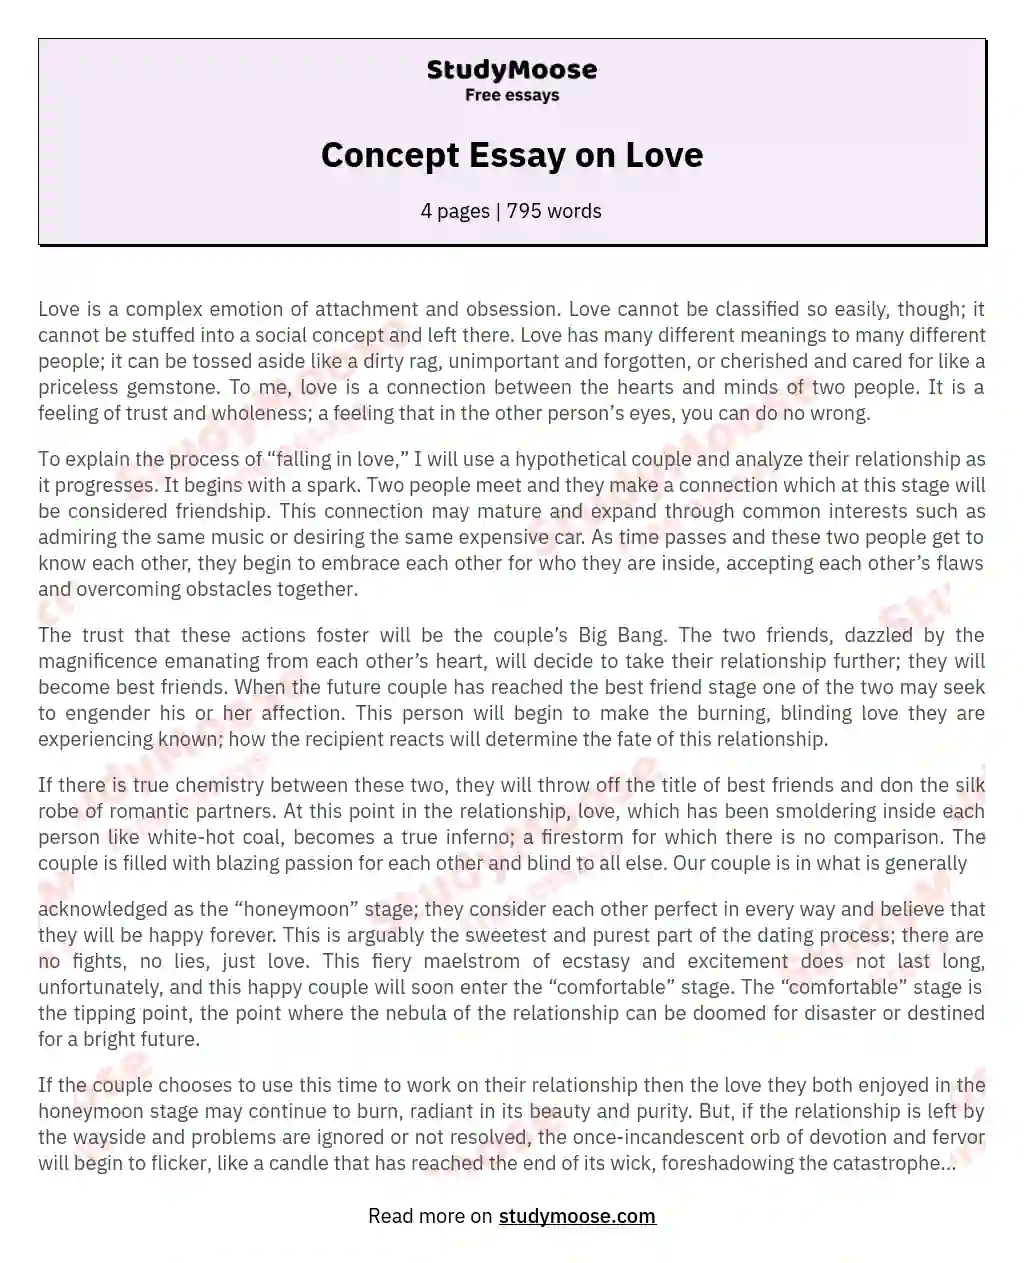 free essay on love